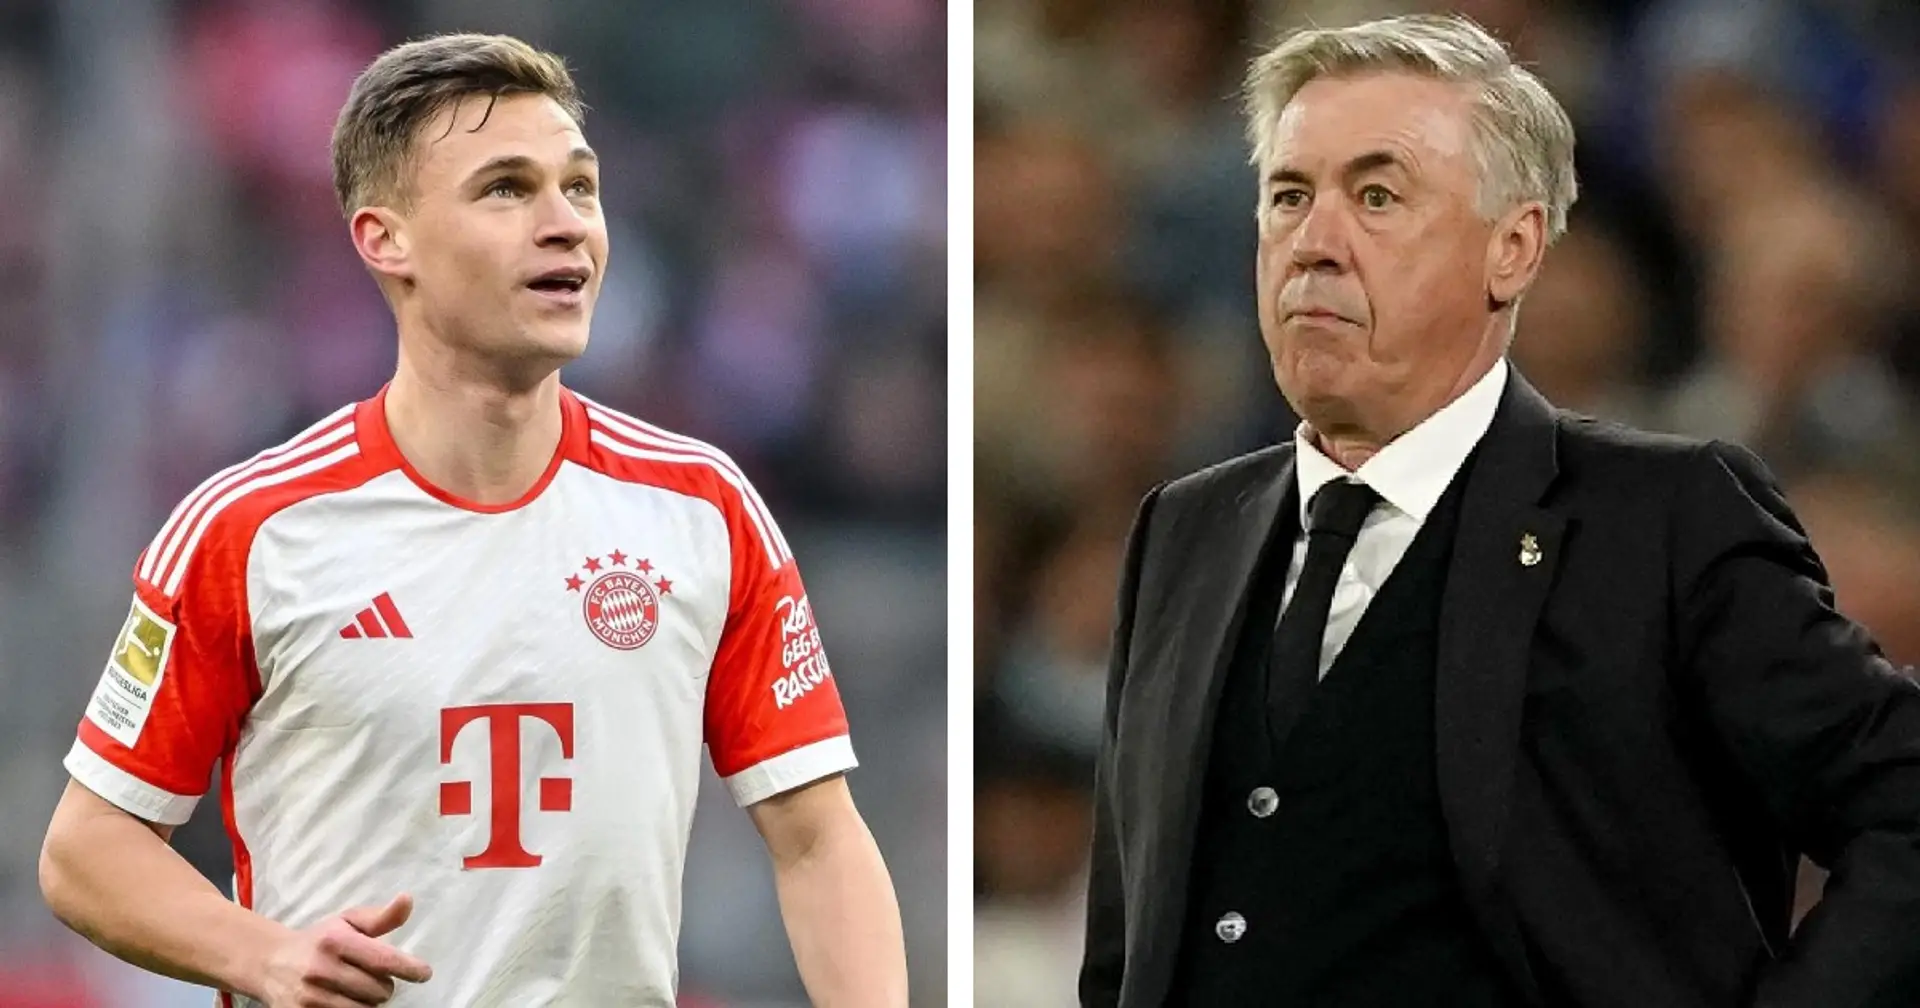 Le Bayern est prêt à vendre Kimmich – le milieu de terrain intéressé à rejoindre le Real Madrid : Sky Germany